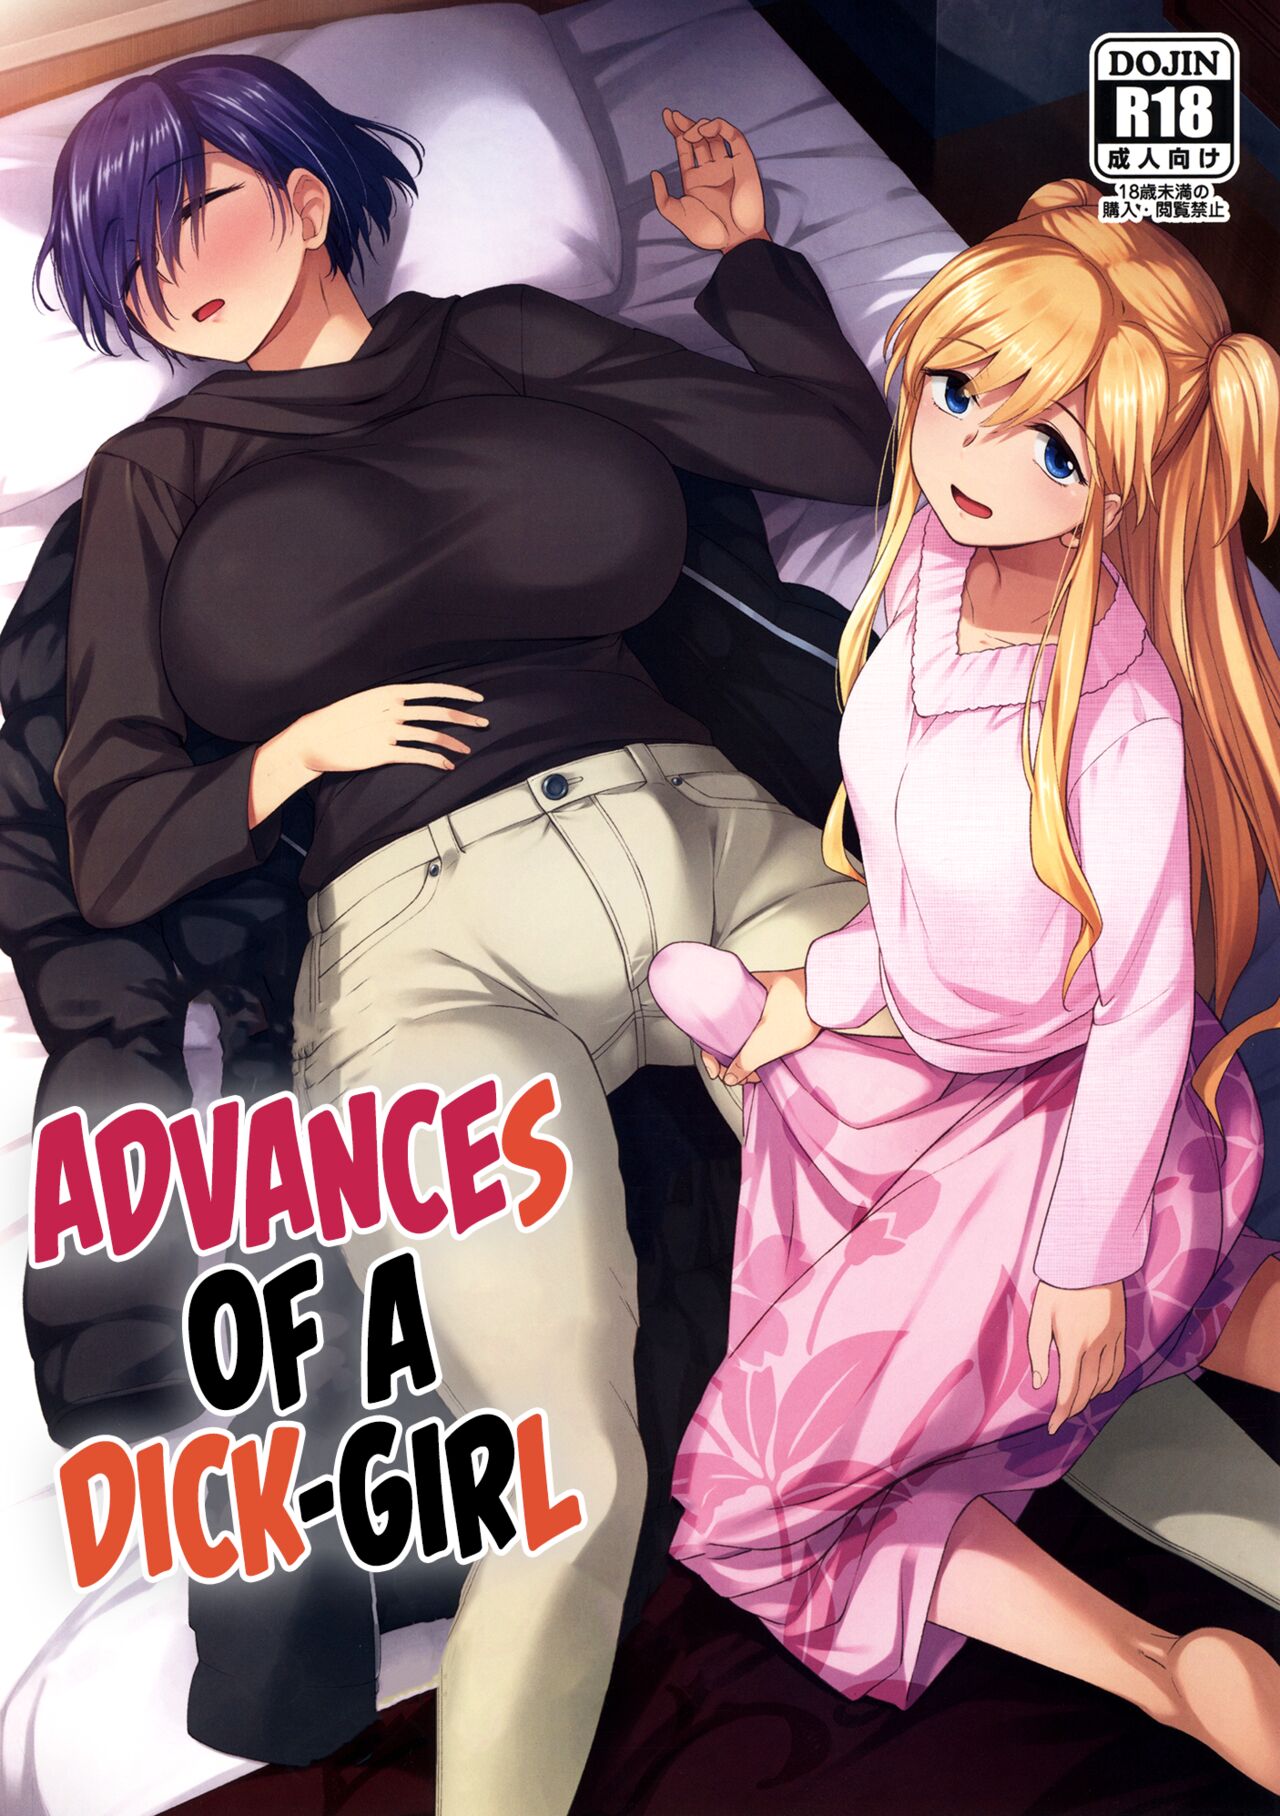 Dick girl on dick girl porn comic